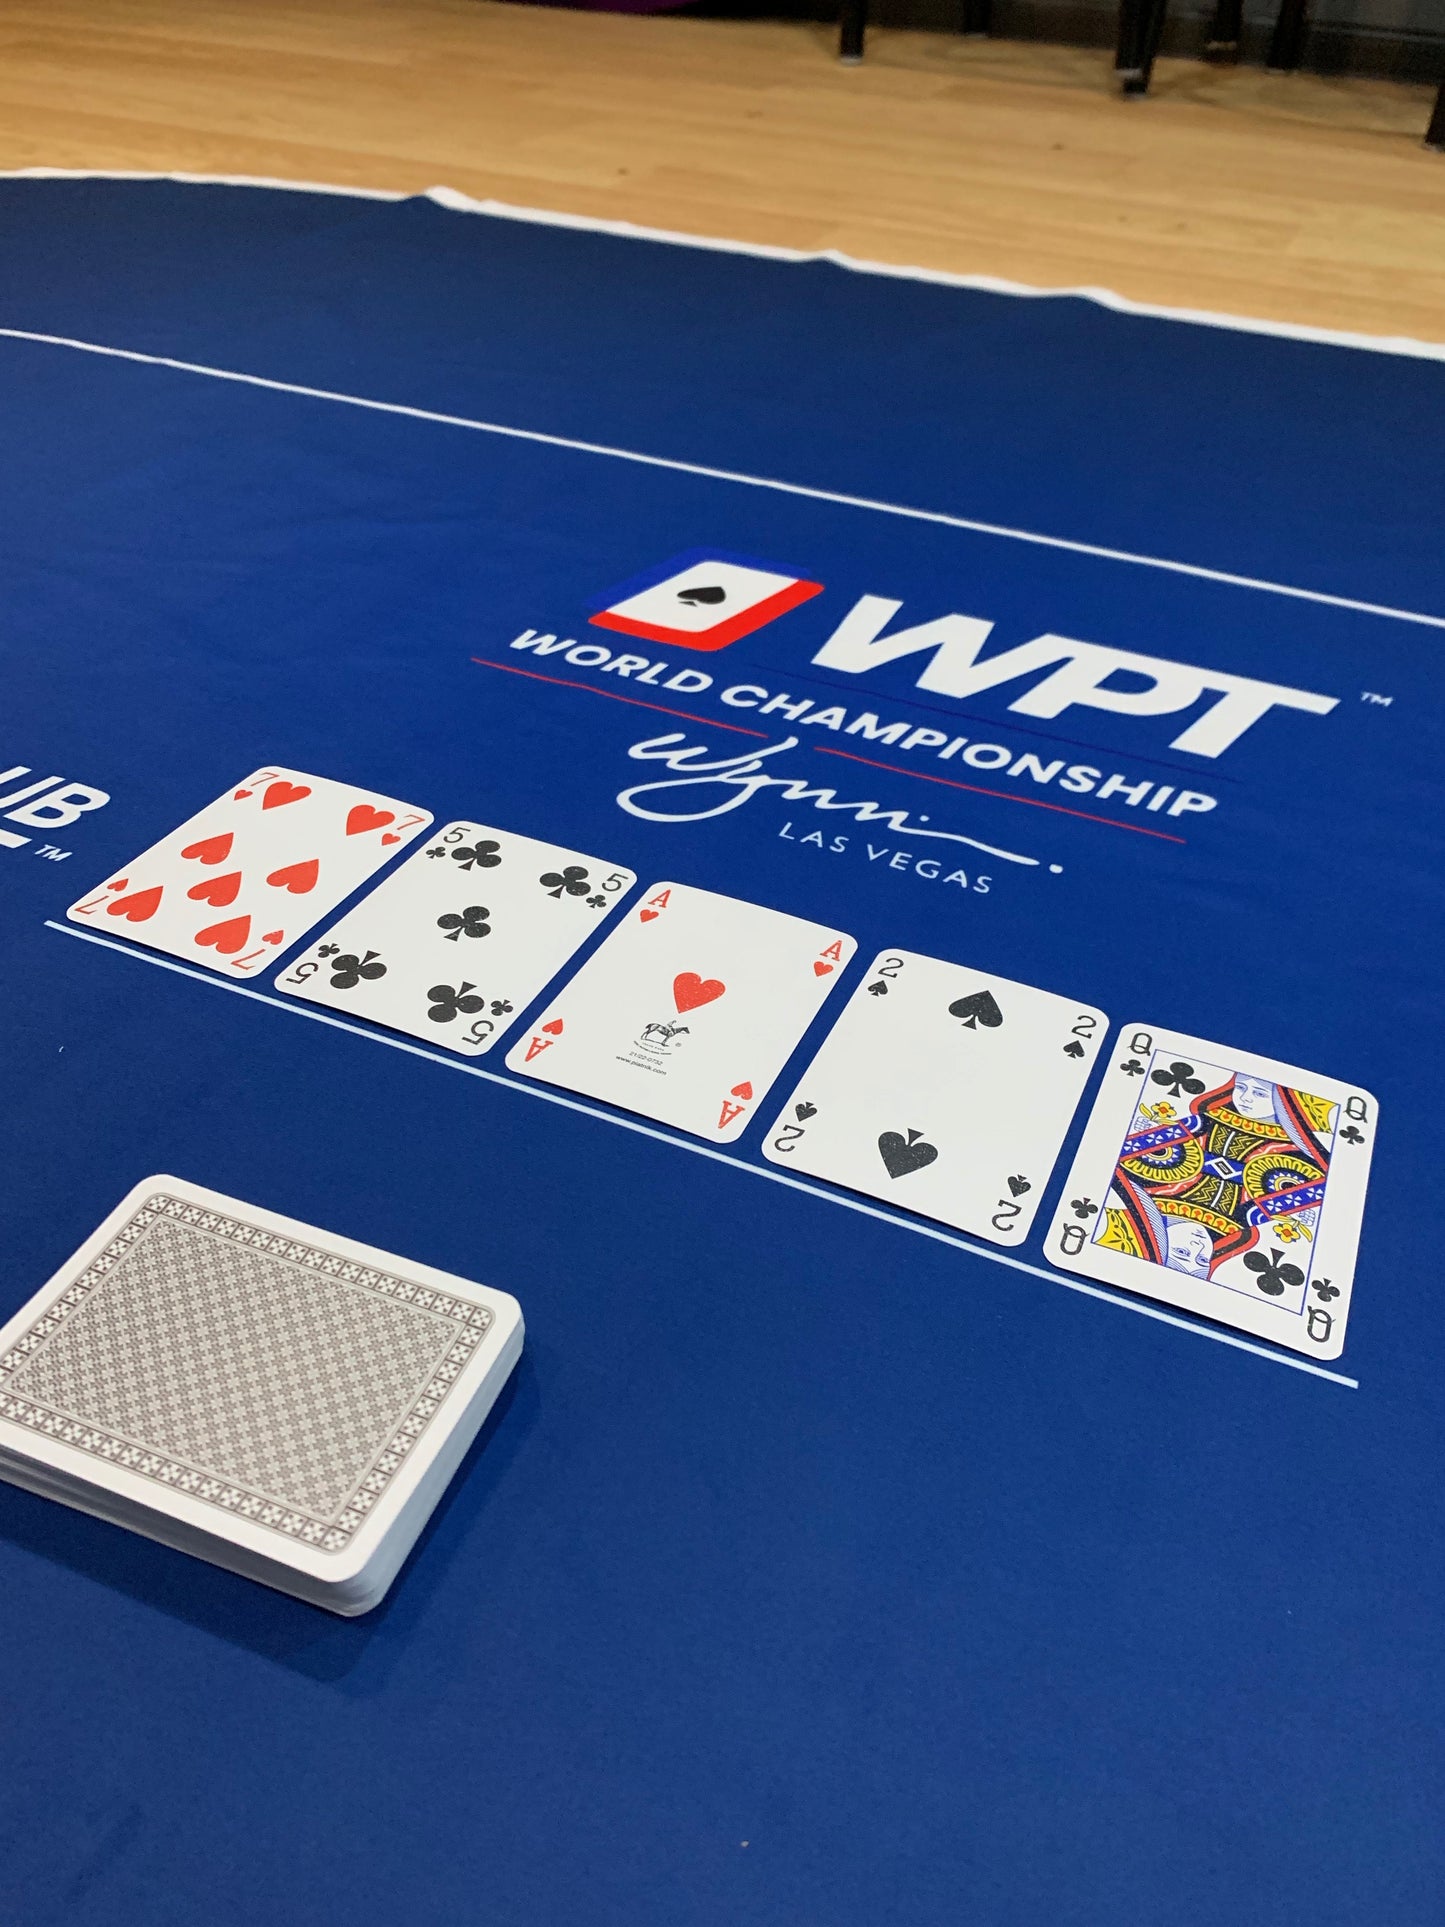 Poker Table Felt - WPT